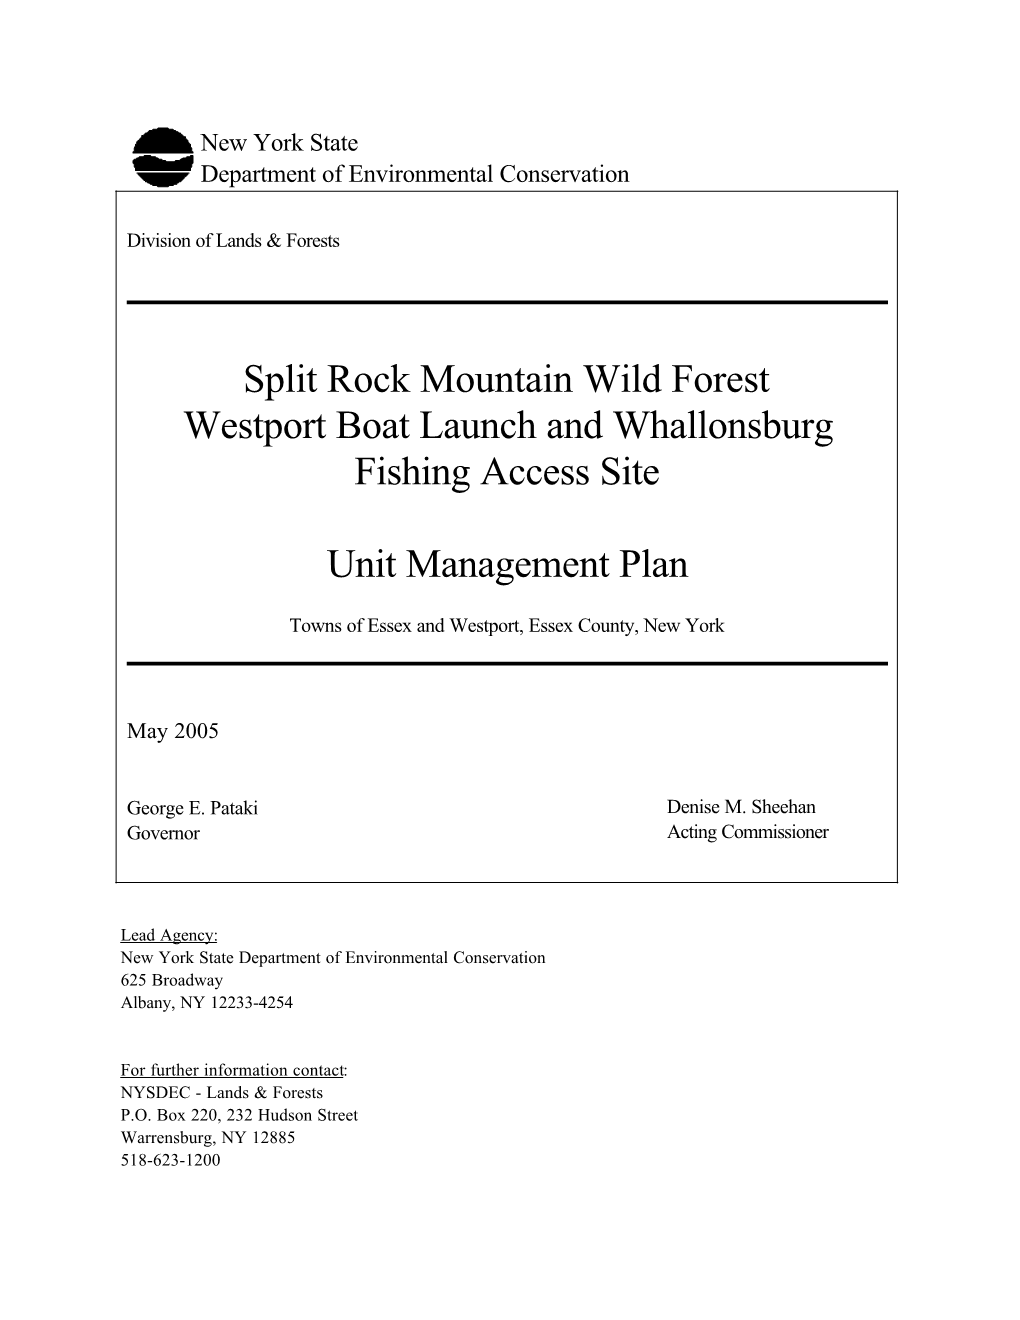 Split Rock Mountain Wild Forest Unit Management Plan